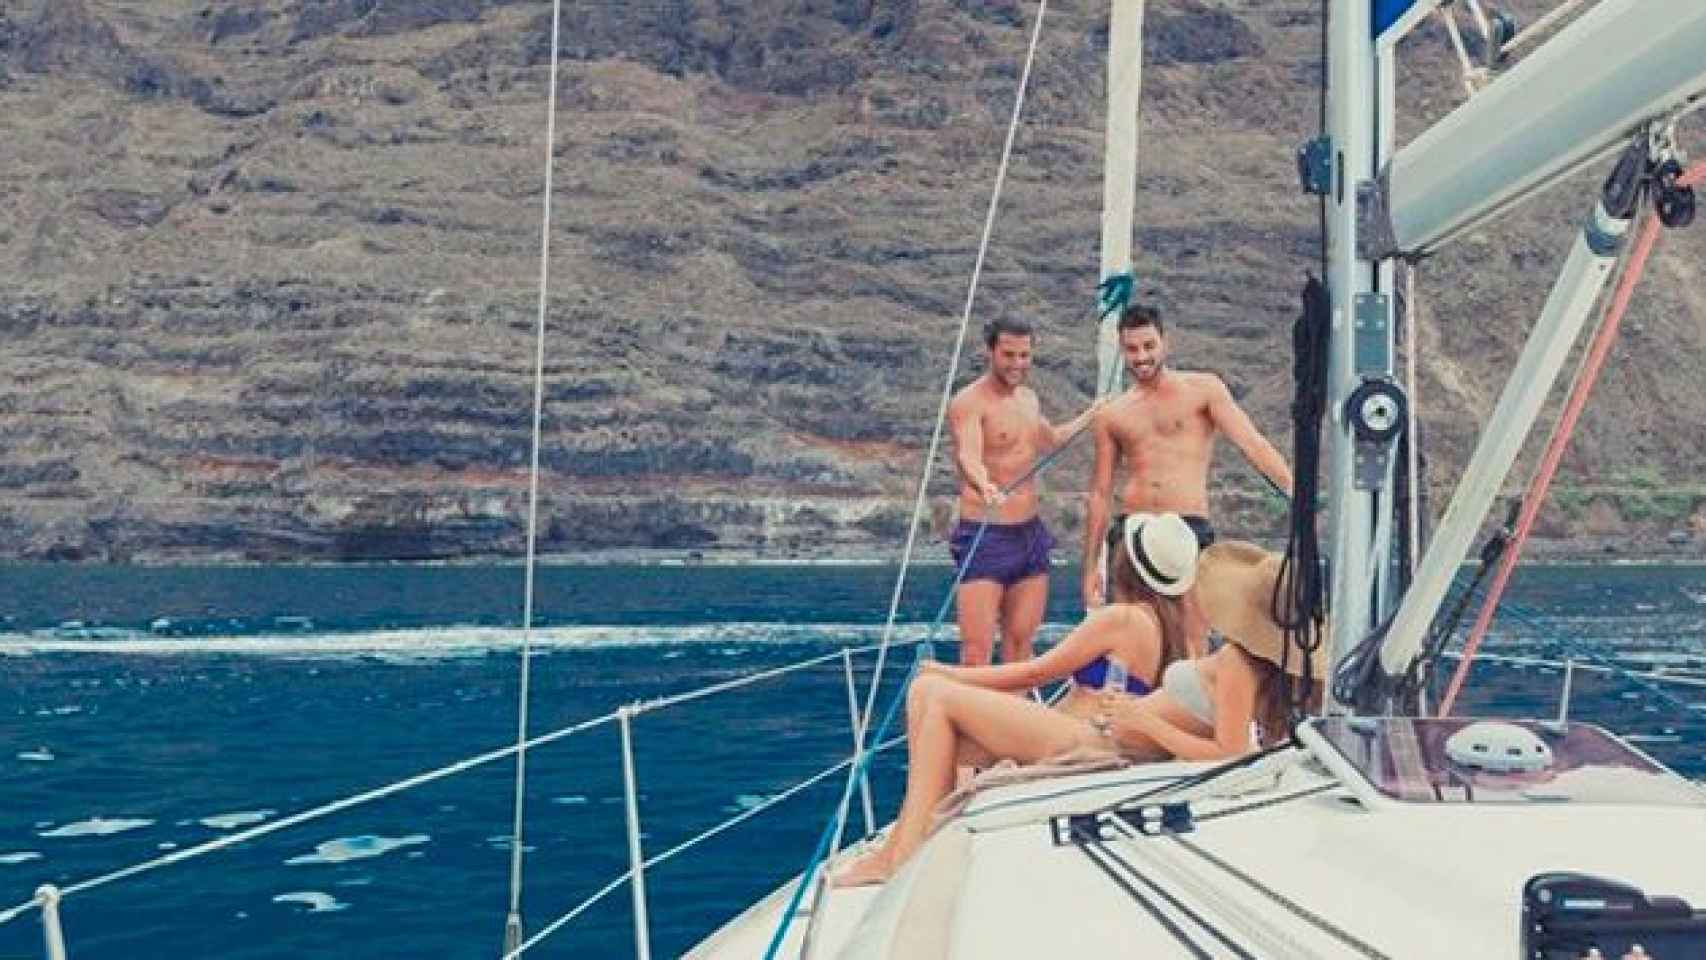 Cuatro personas en una embarcación de alquiler en la Costa Brava / CG